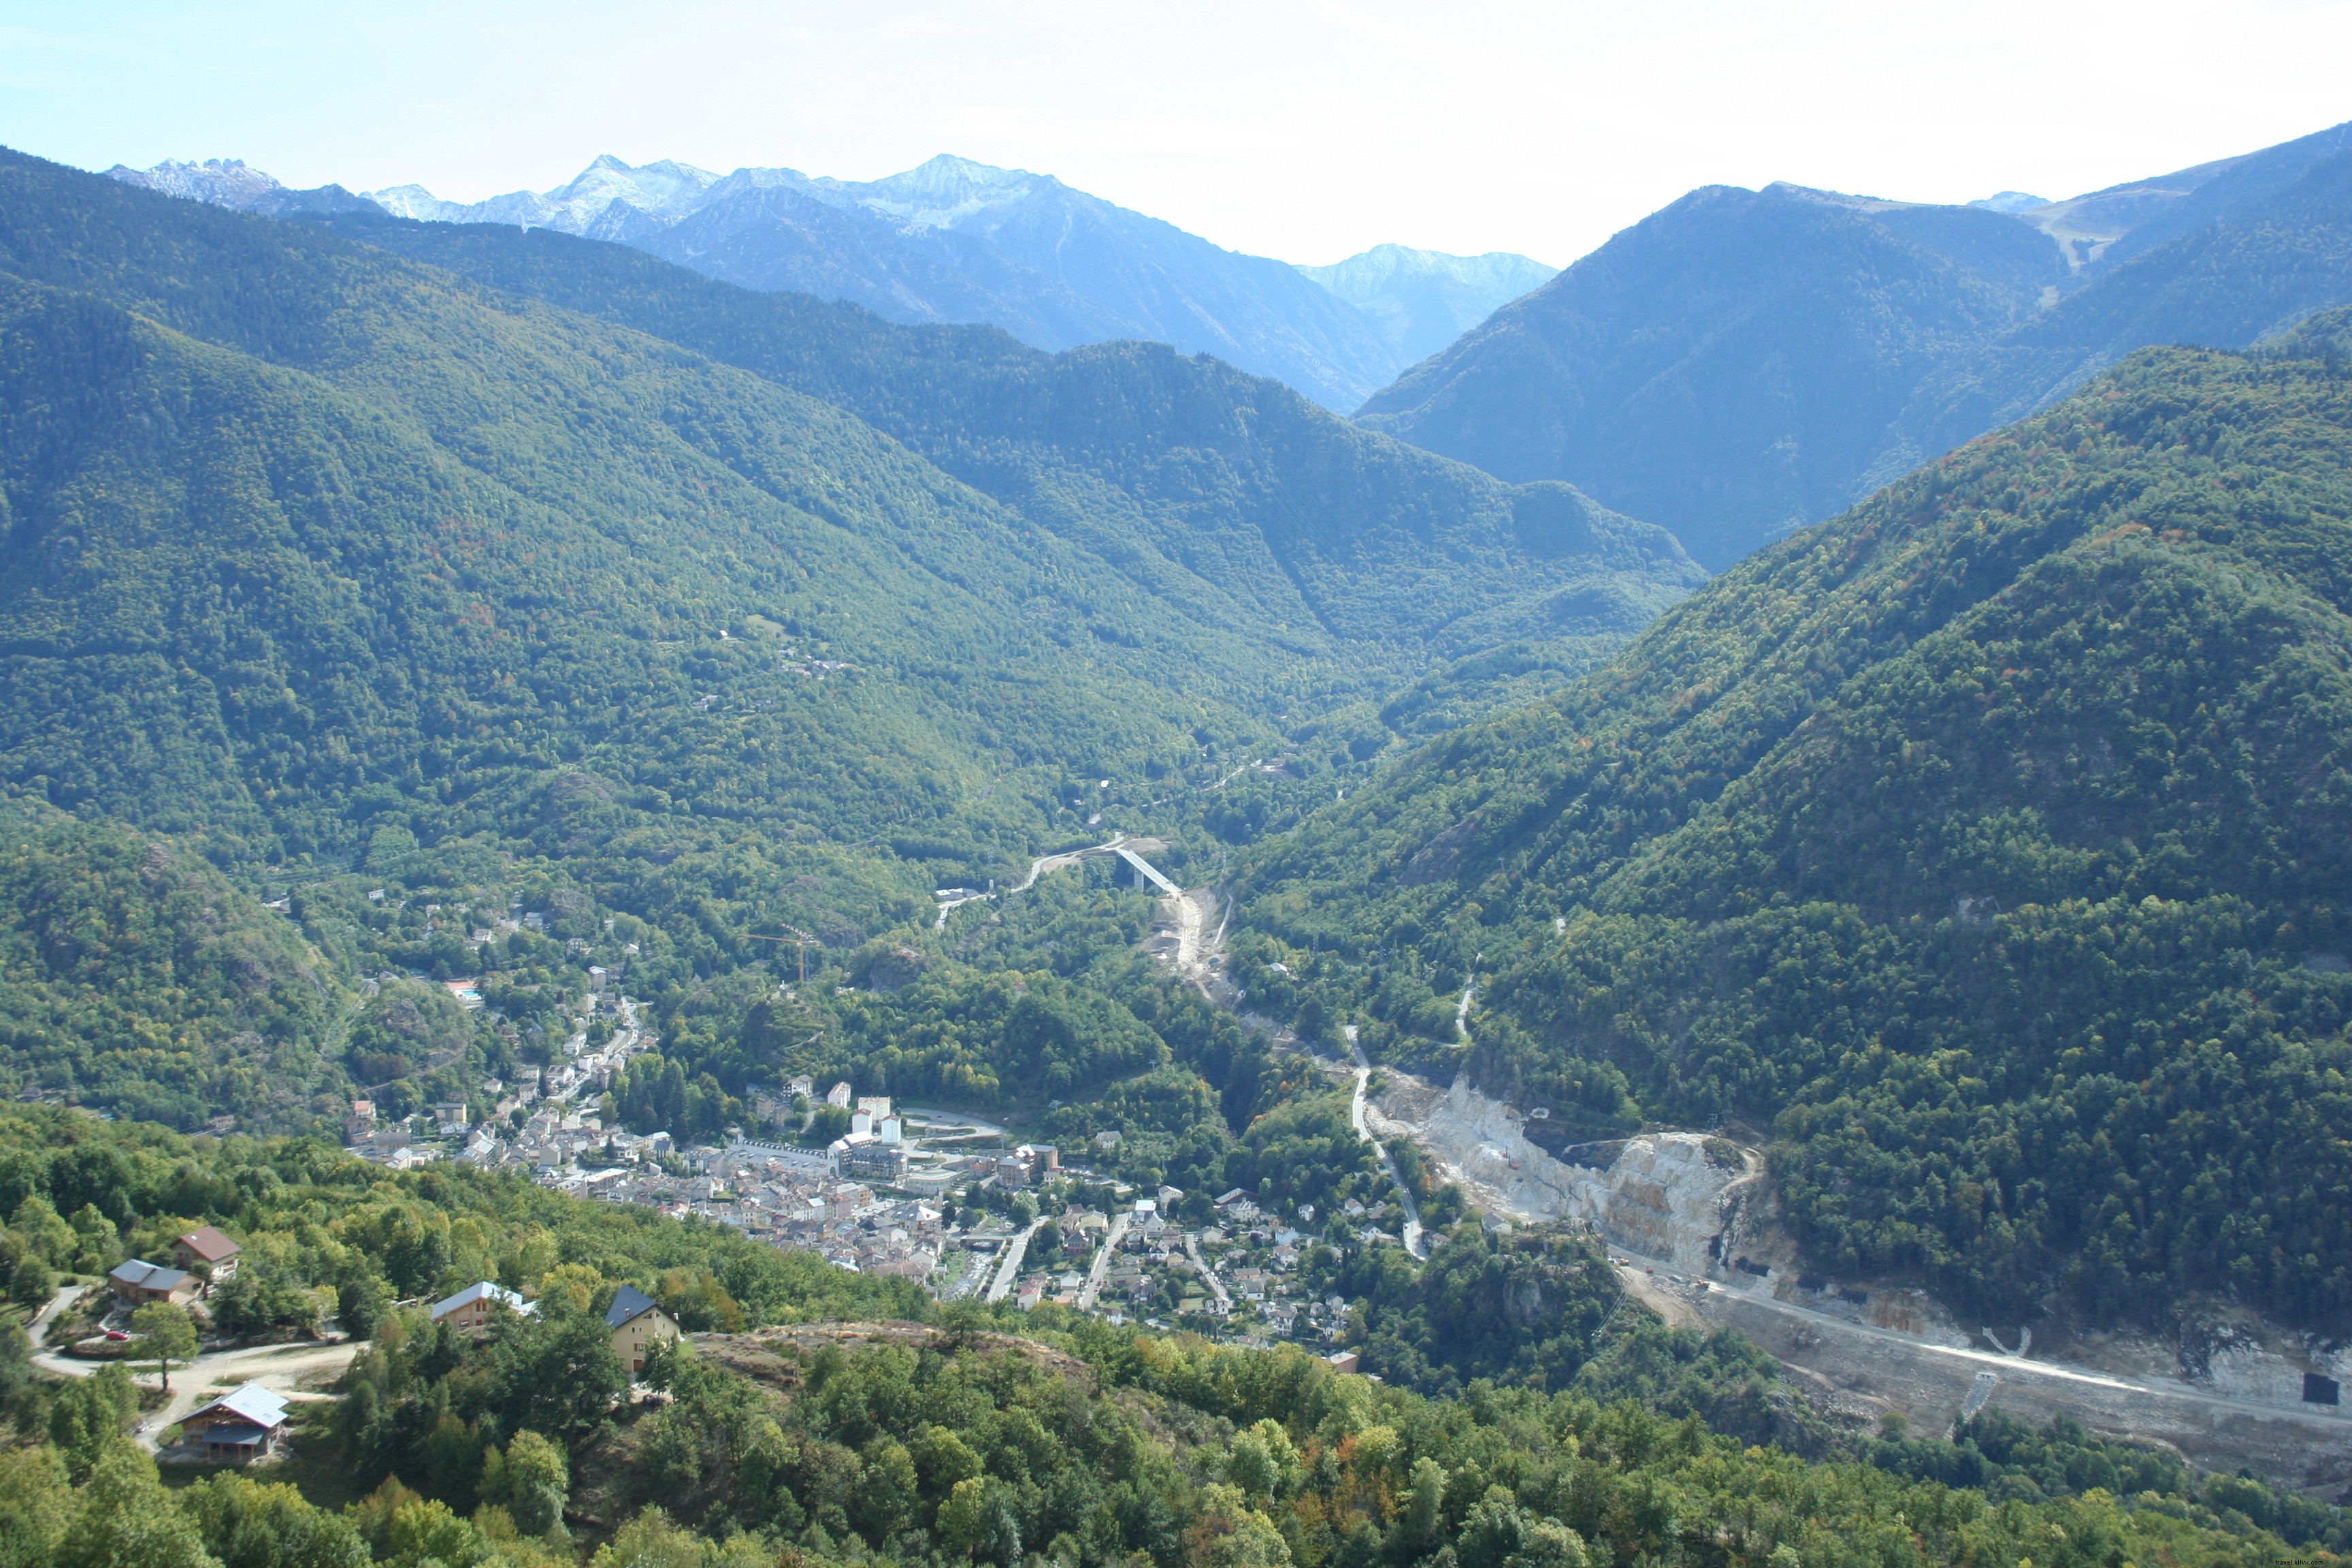 Ocho lugares que no debes perderte en un viaje a los Pirineos franceses